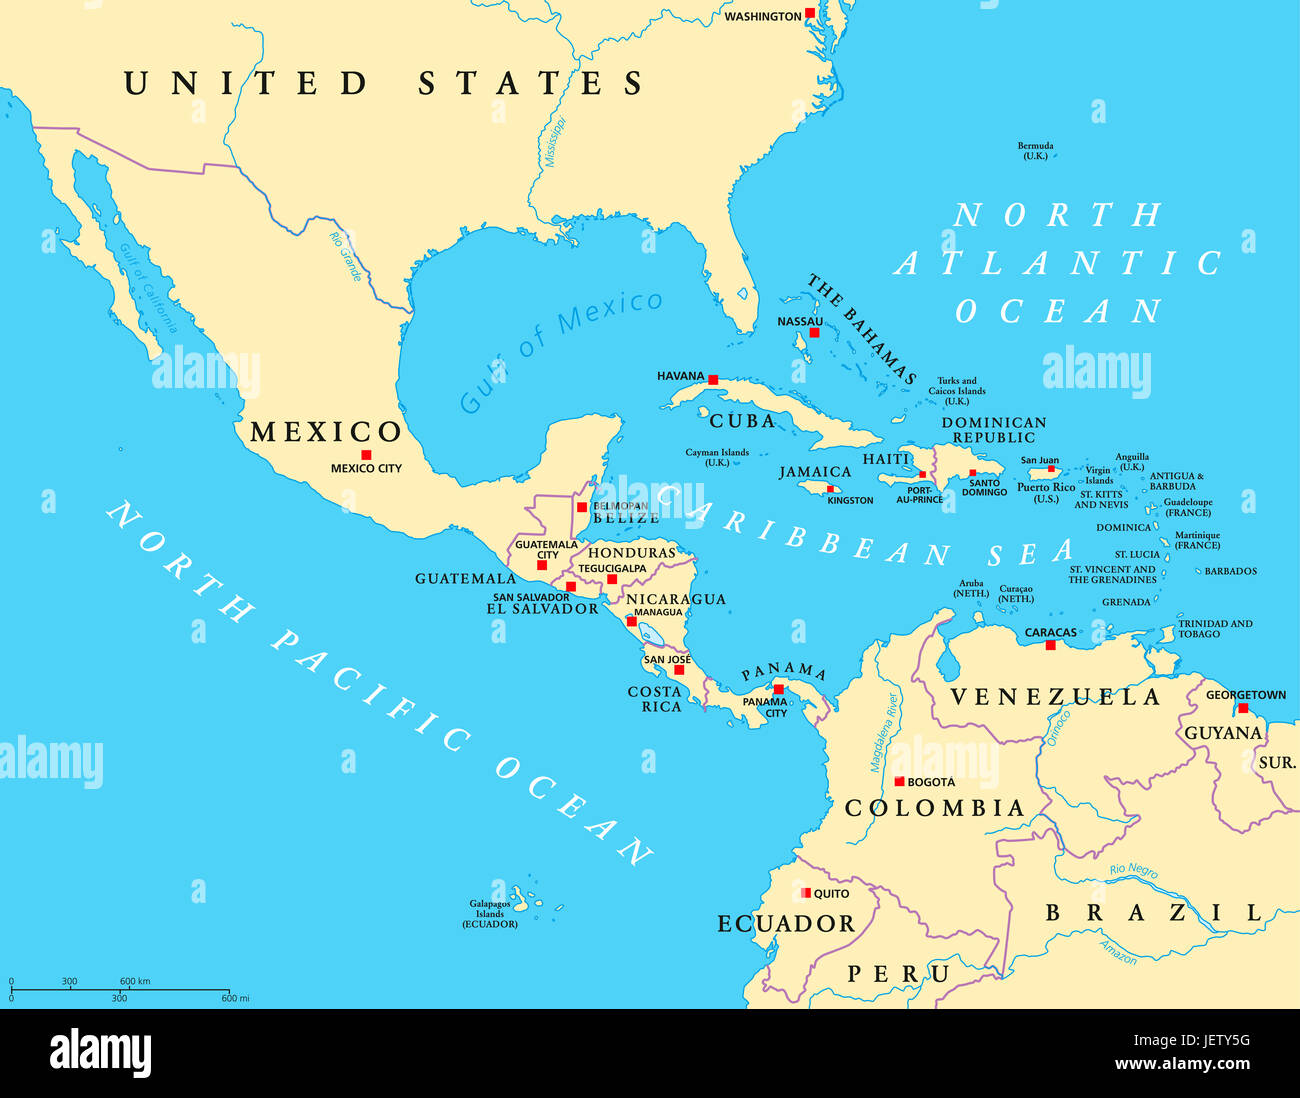 Centre de l'Amérique carte politique avec les capitales et les frontières. Les latitudes moyennes de la région des Amériques. Au Mexique, en Amérique centrale, les Caraïbes, l'Amérique du Sud. Banque D'Images